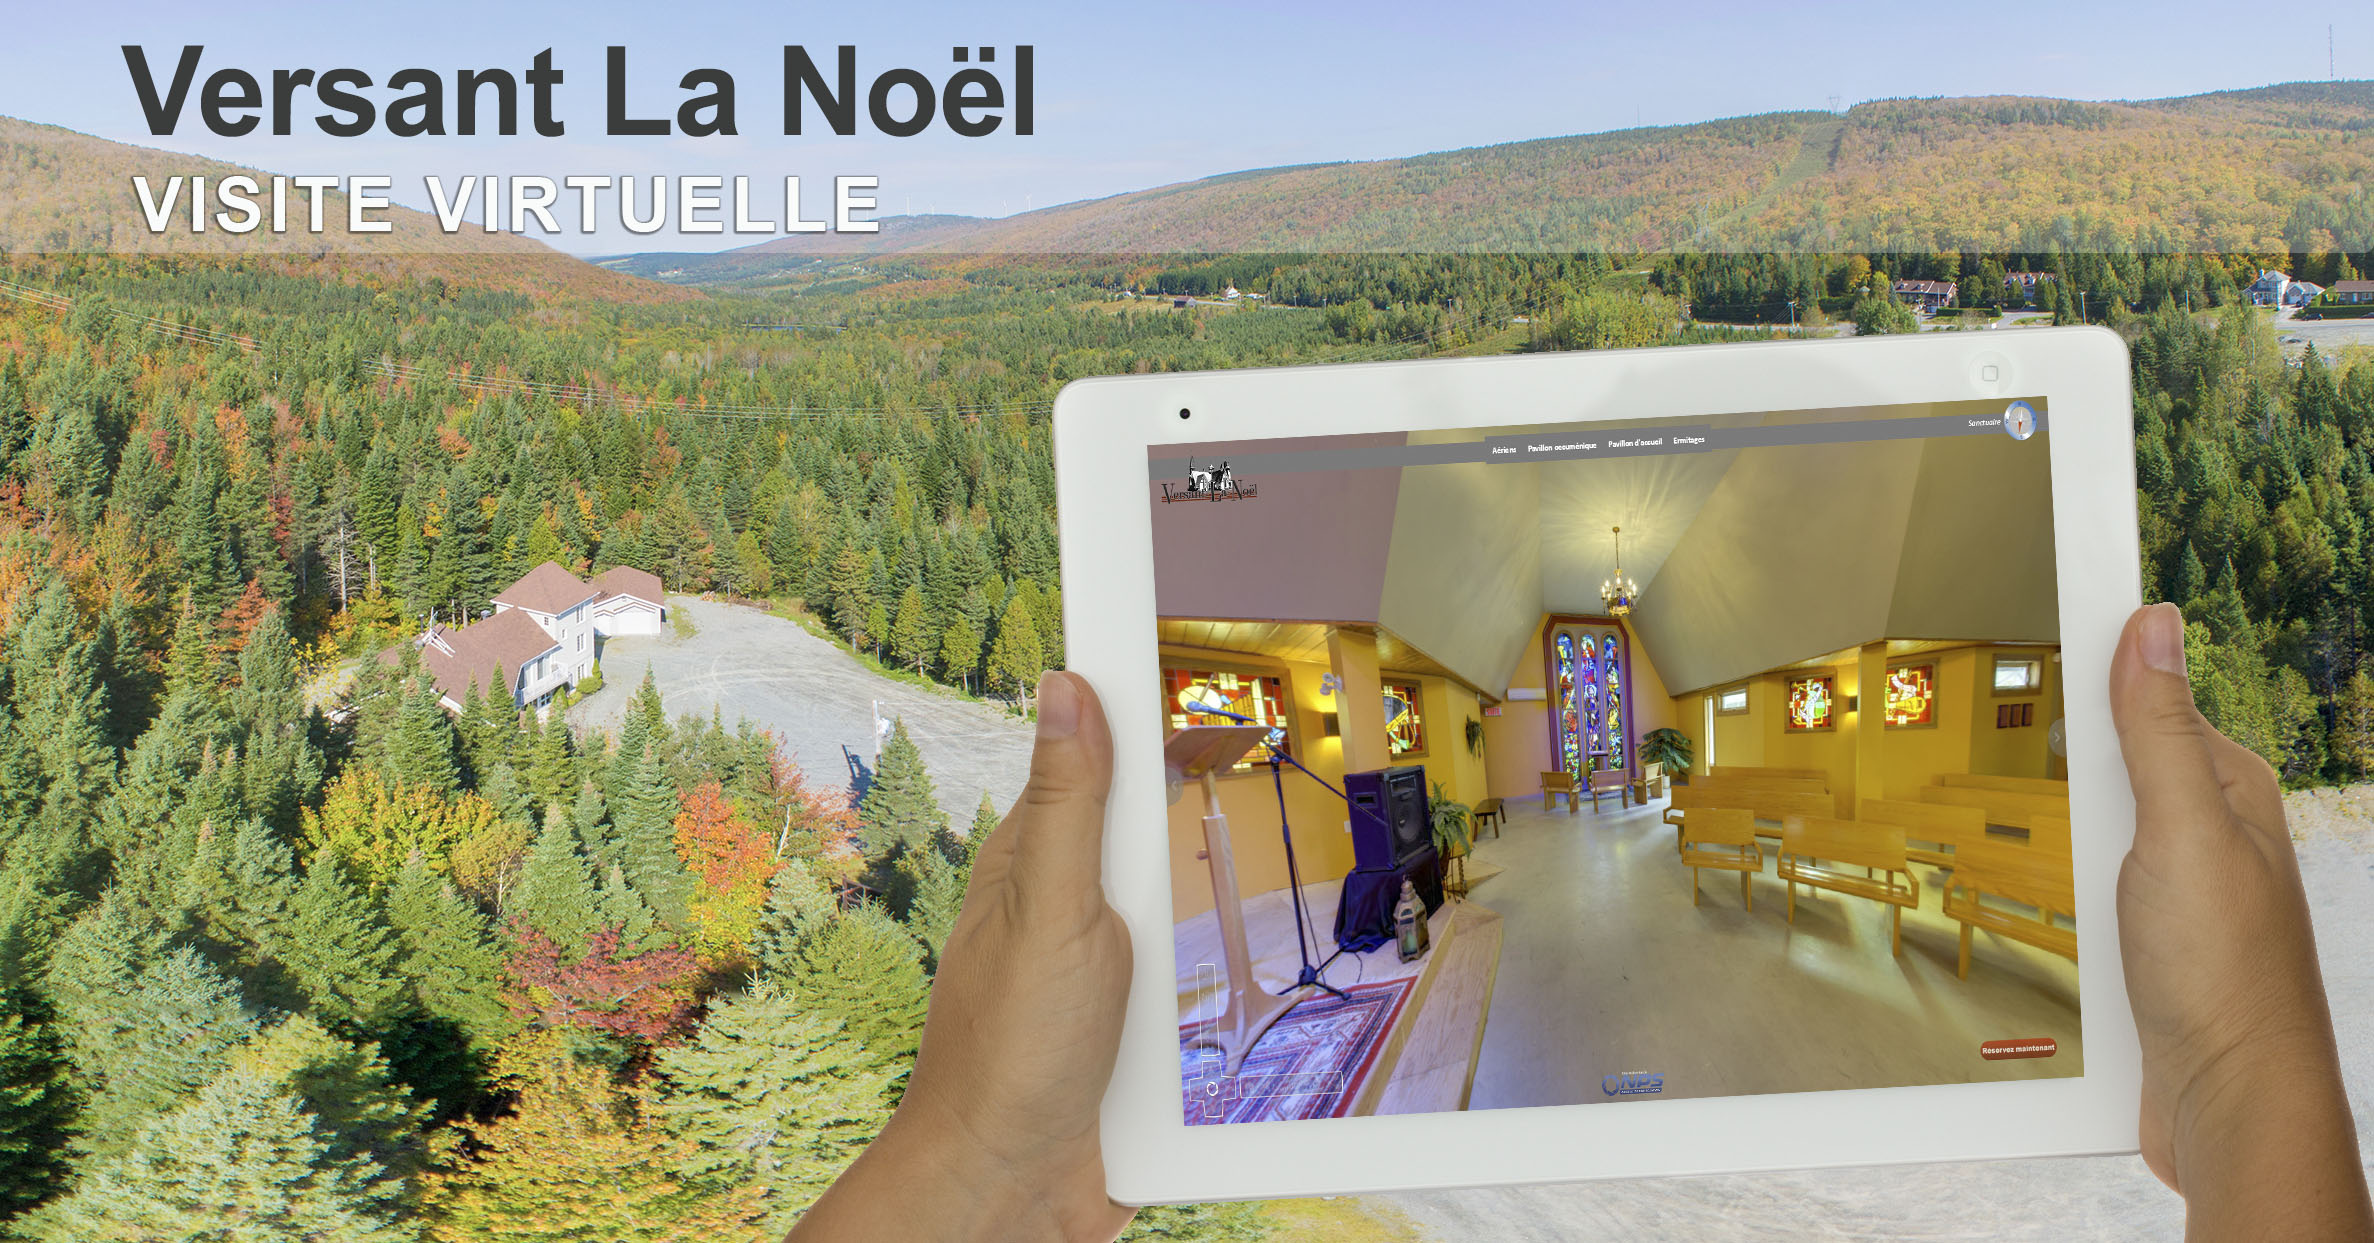 Visite virtuelle 360 degrés Versant La Noël